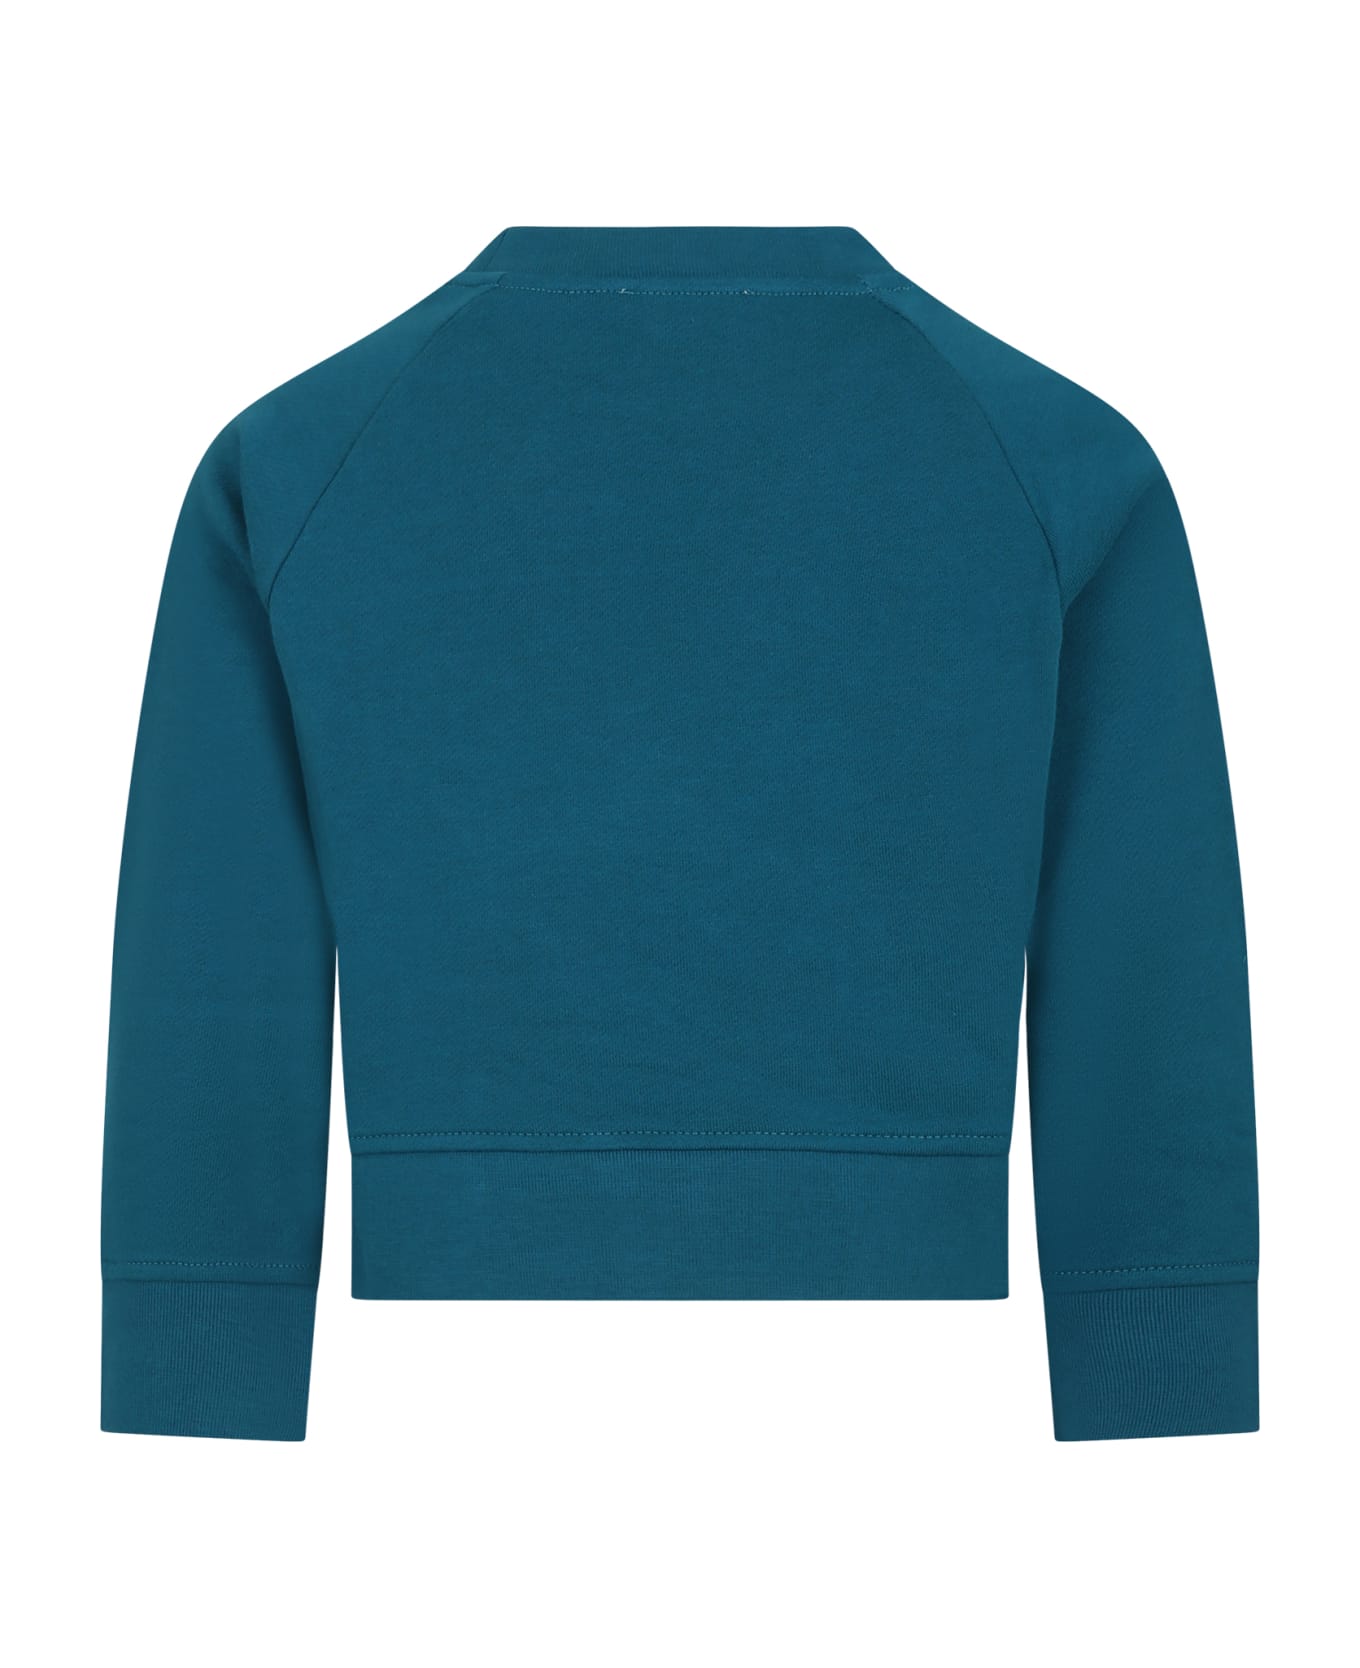 Stella McCartney Kids Green Sweatshirt For Girl With Flowers And Logo - Green ニットウェア＆スウェットシャツ